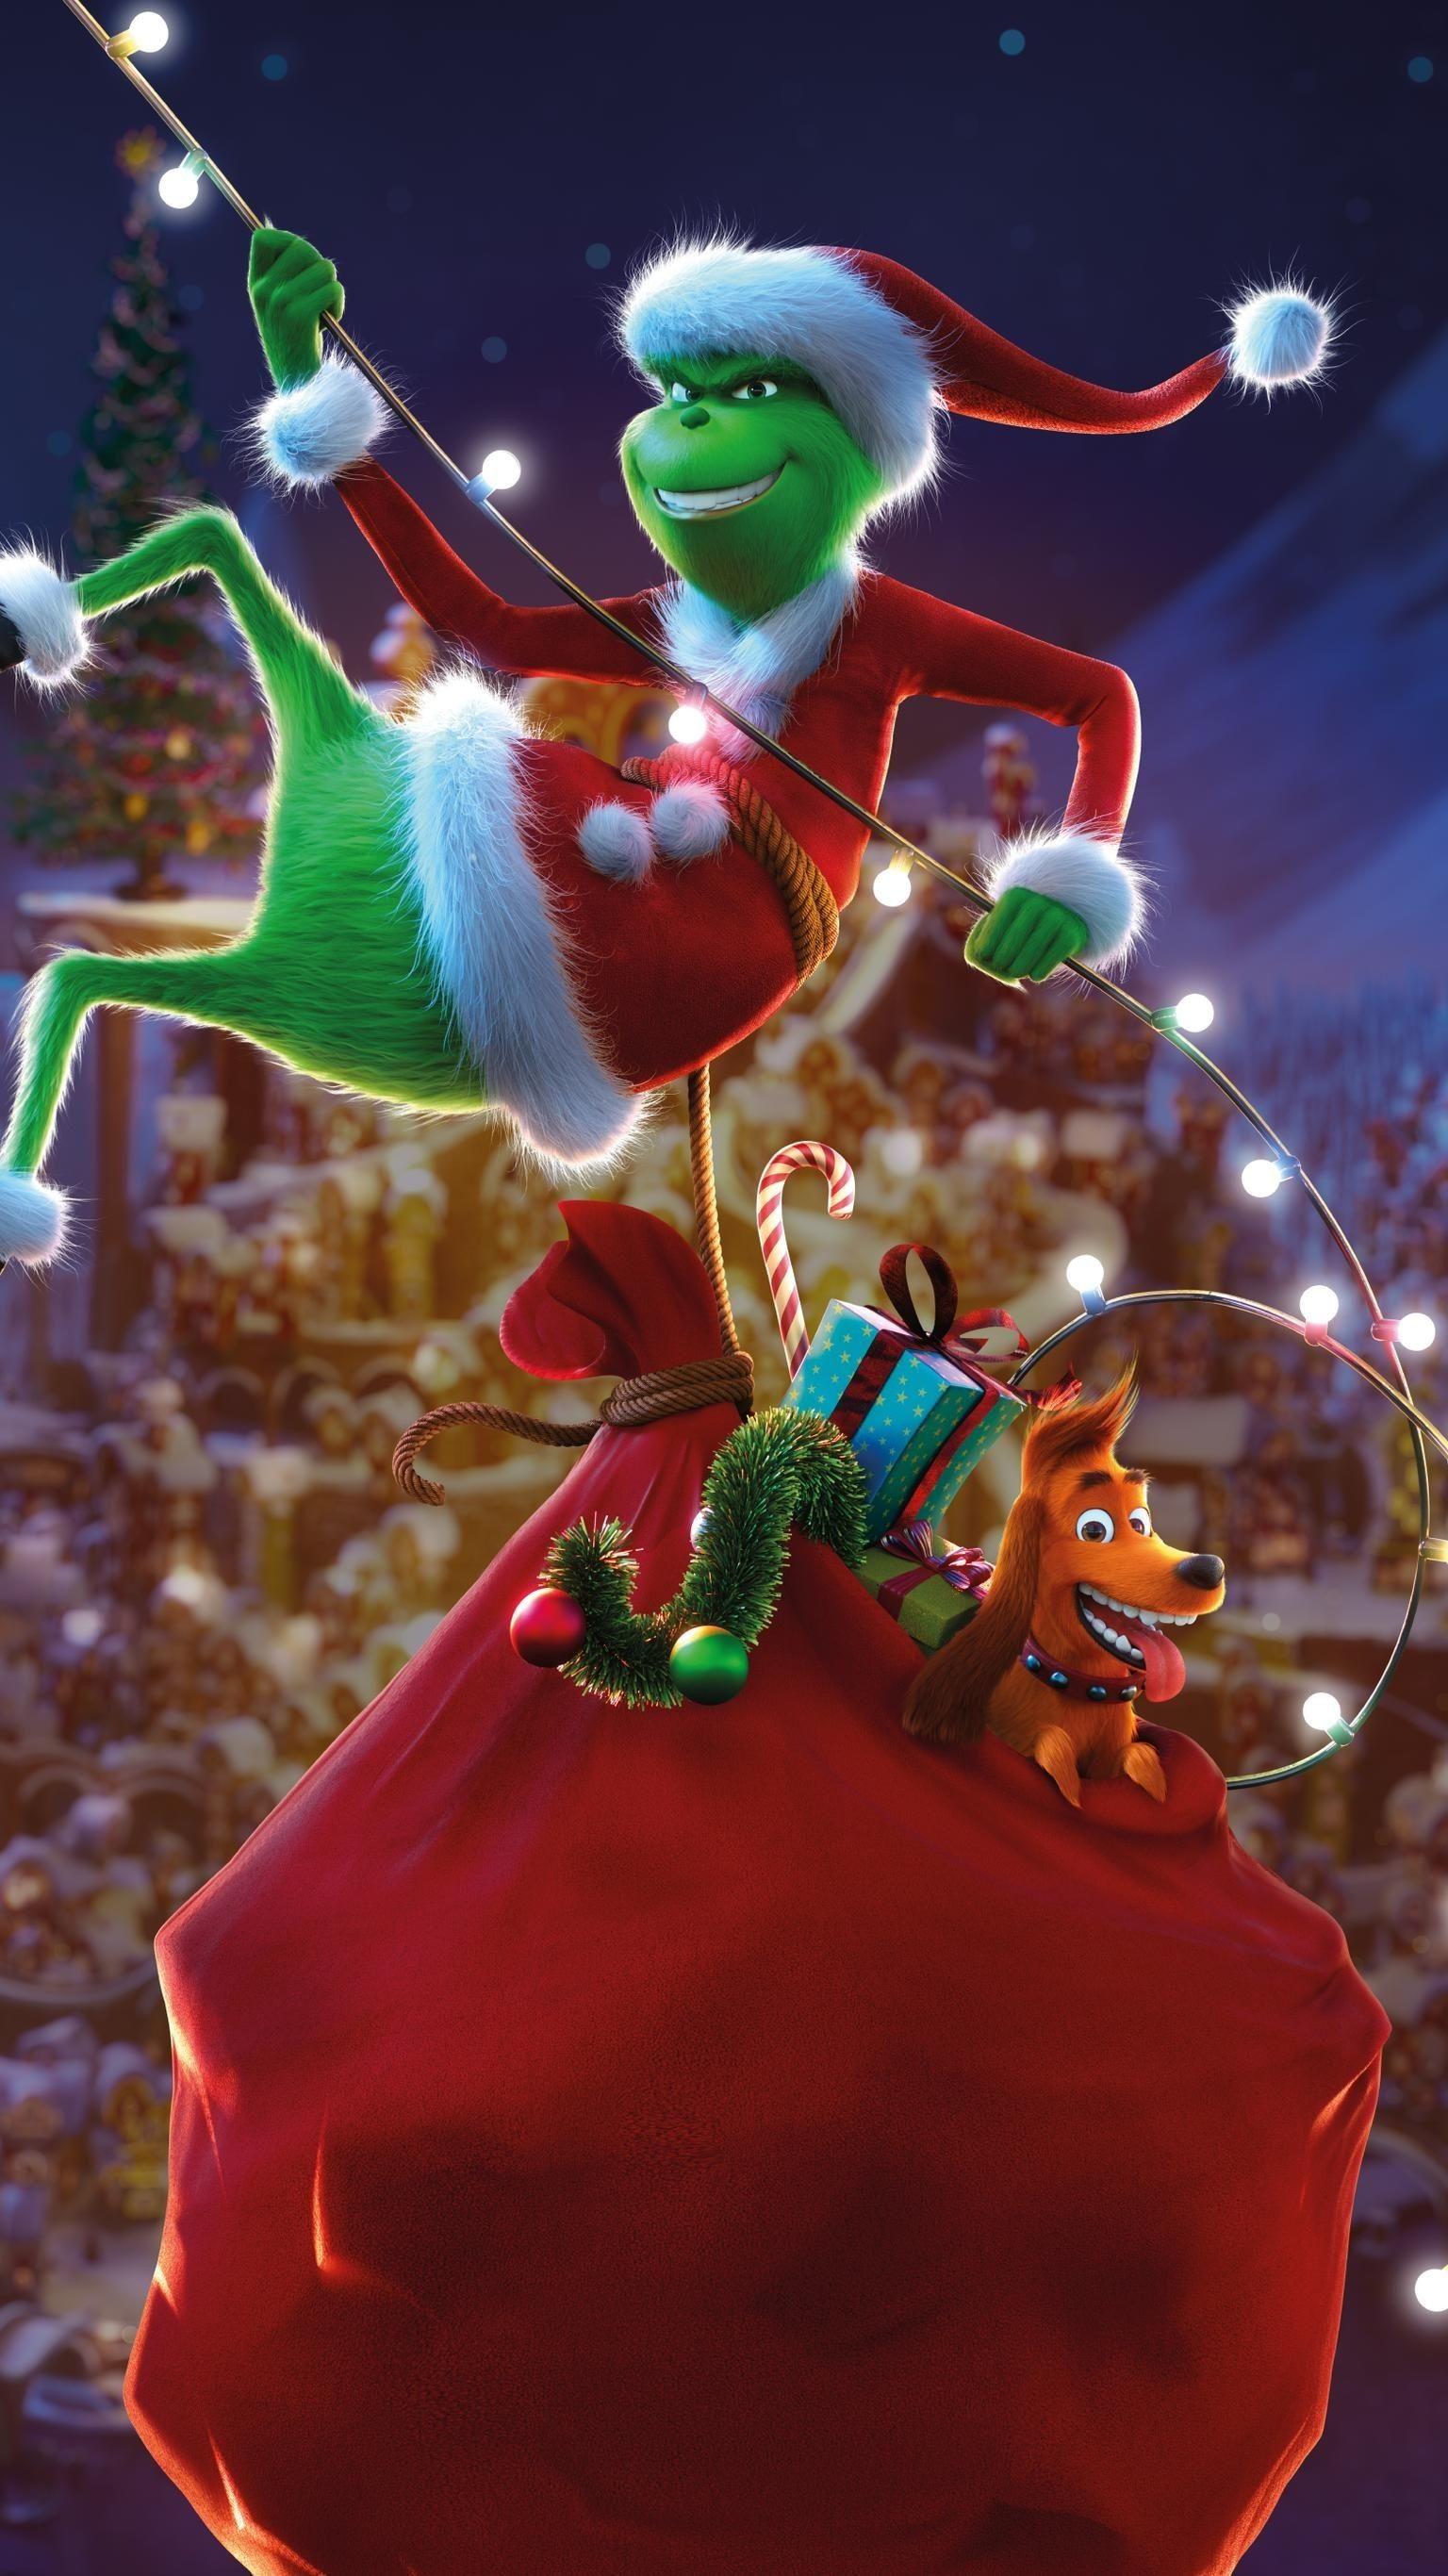 Giáng sinh càng đến gần, đừng quên tải về hình nền Grinch Giáng Sinh để cảm nhận một mùa lễ hội đầy ấm áp. Với hình ảnh rực rỡ và hài hước này, bạn chắc chắn sẽ rất vui lòng.